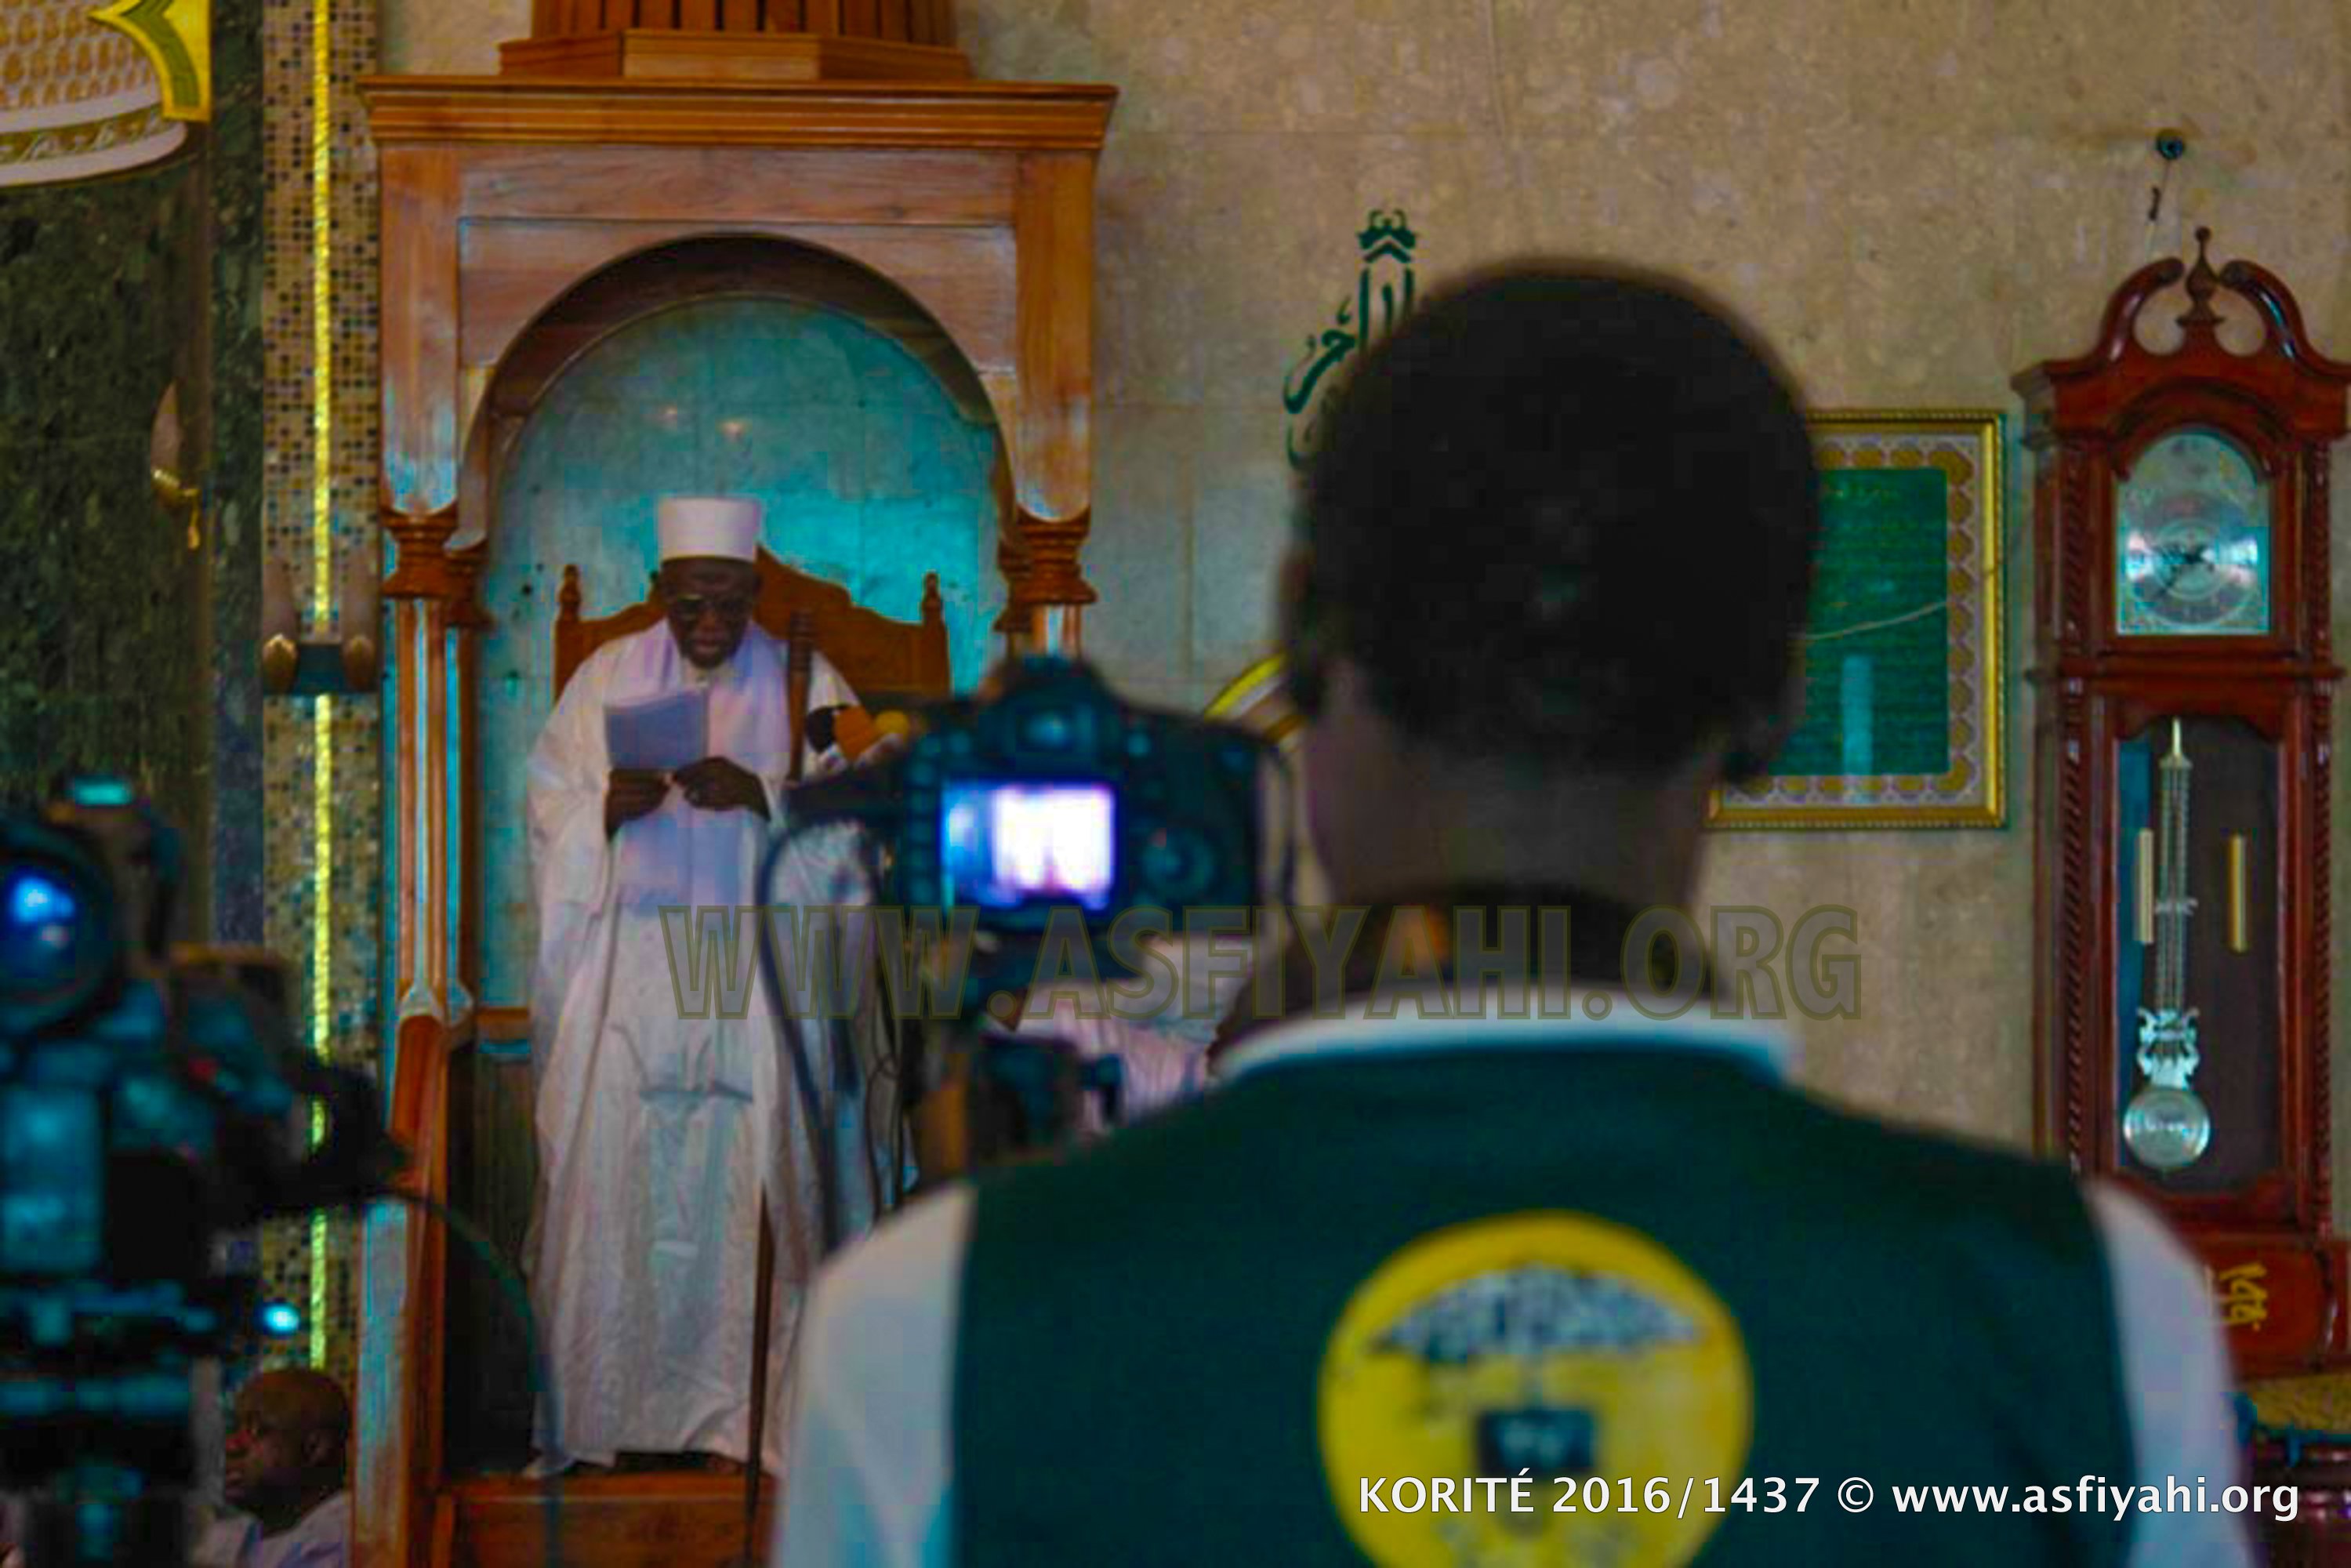 PHOTOS - KORITÉ 2016 À TIVAOUANE - Les Images de la Prière à la Mosquée Serigne Babacar SY (rta)